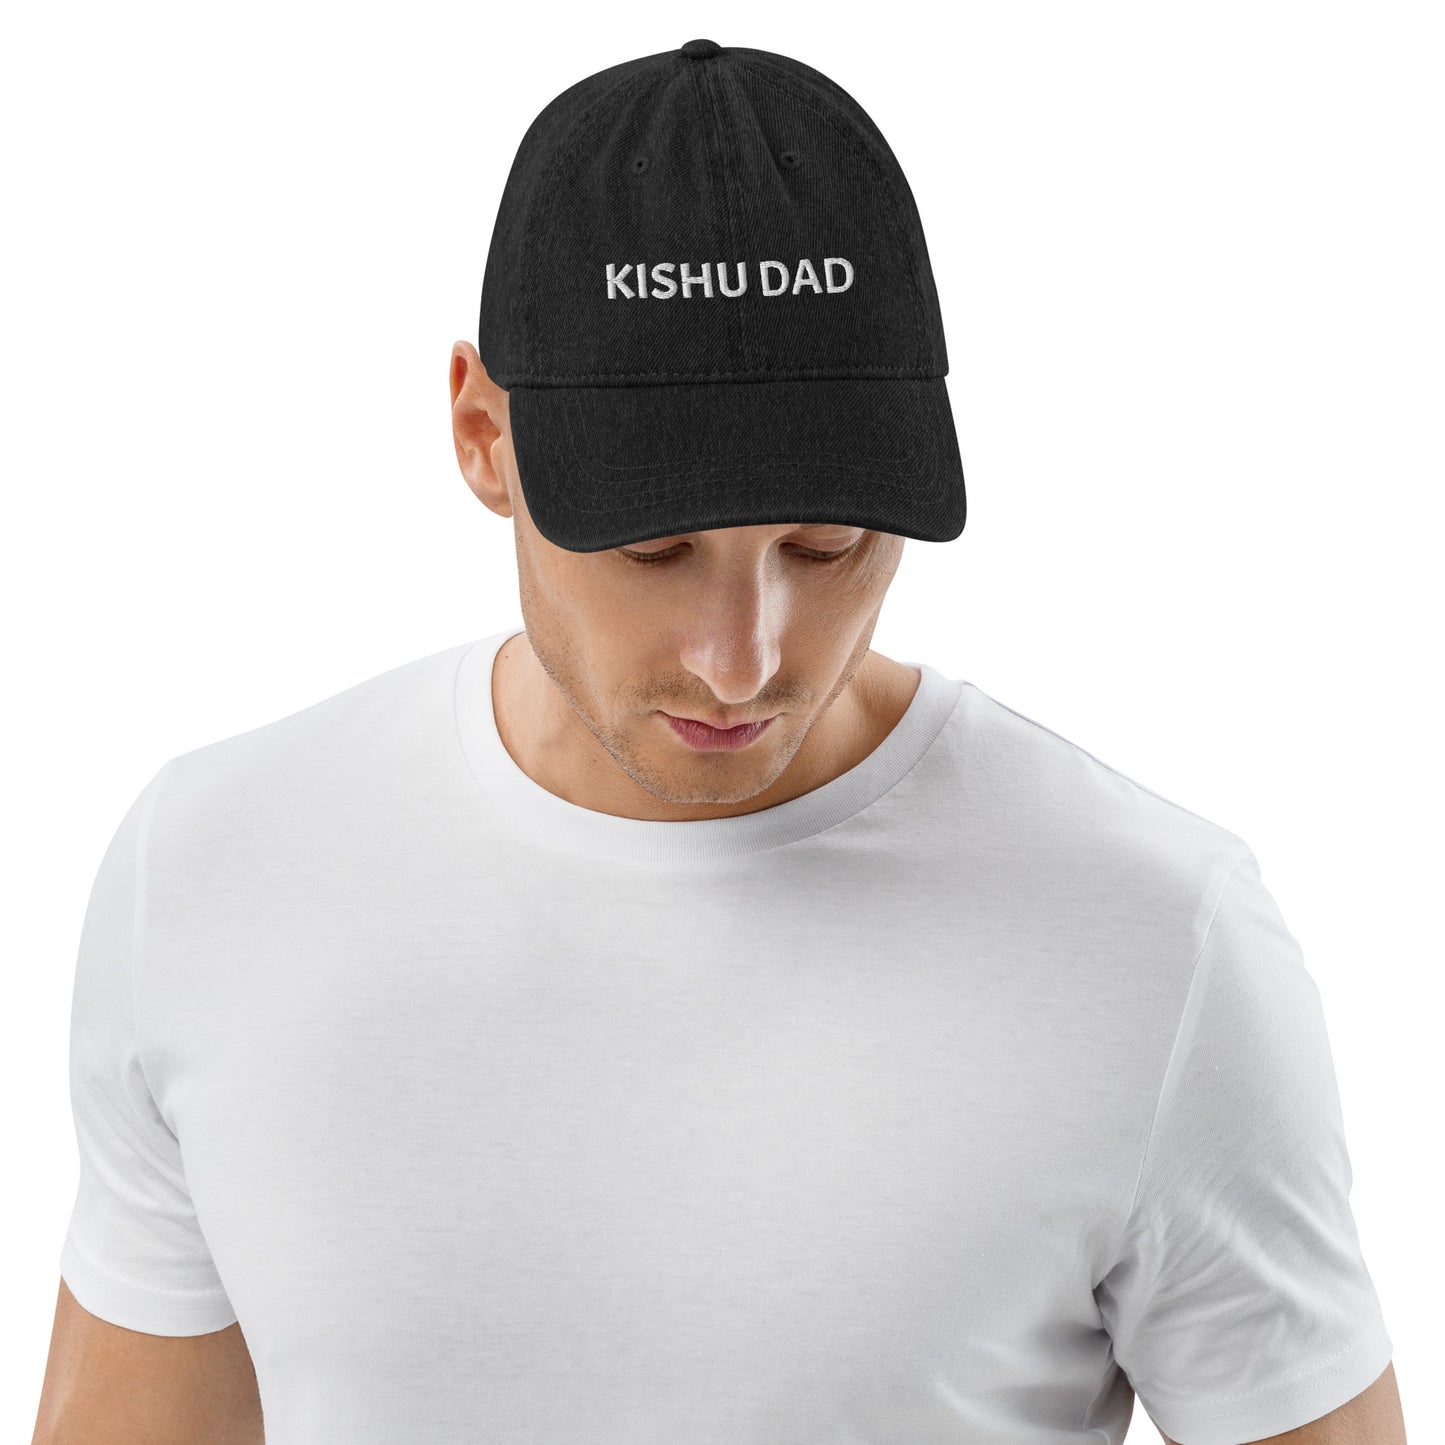 kishu dad black hat for men